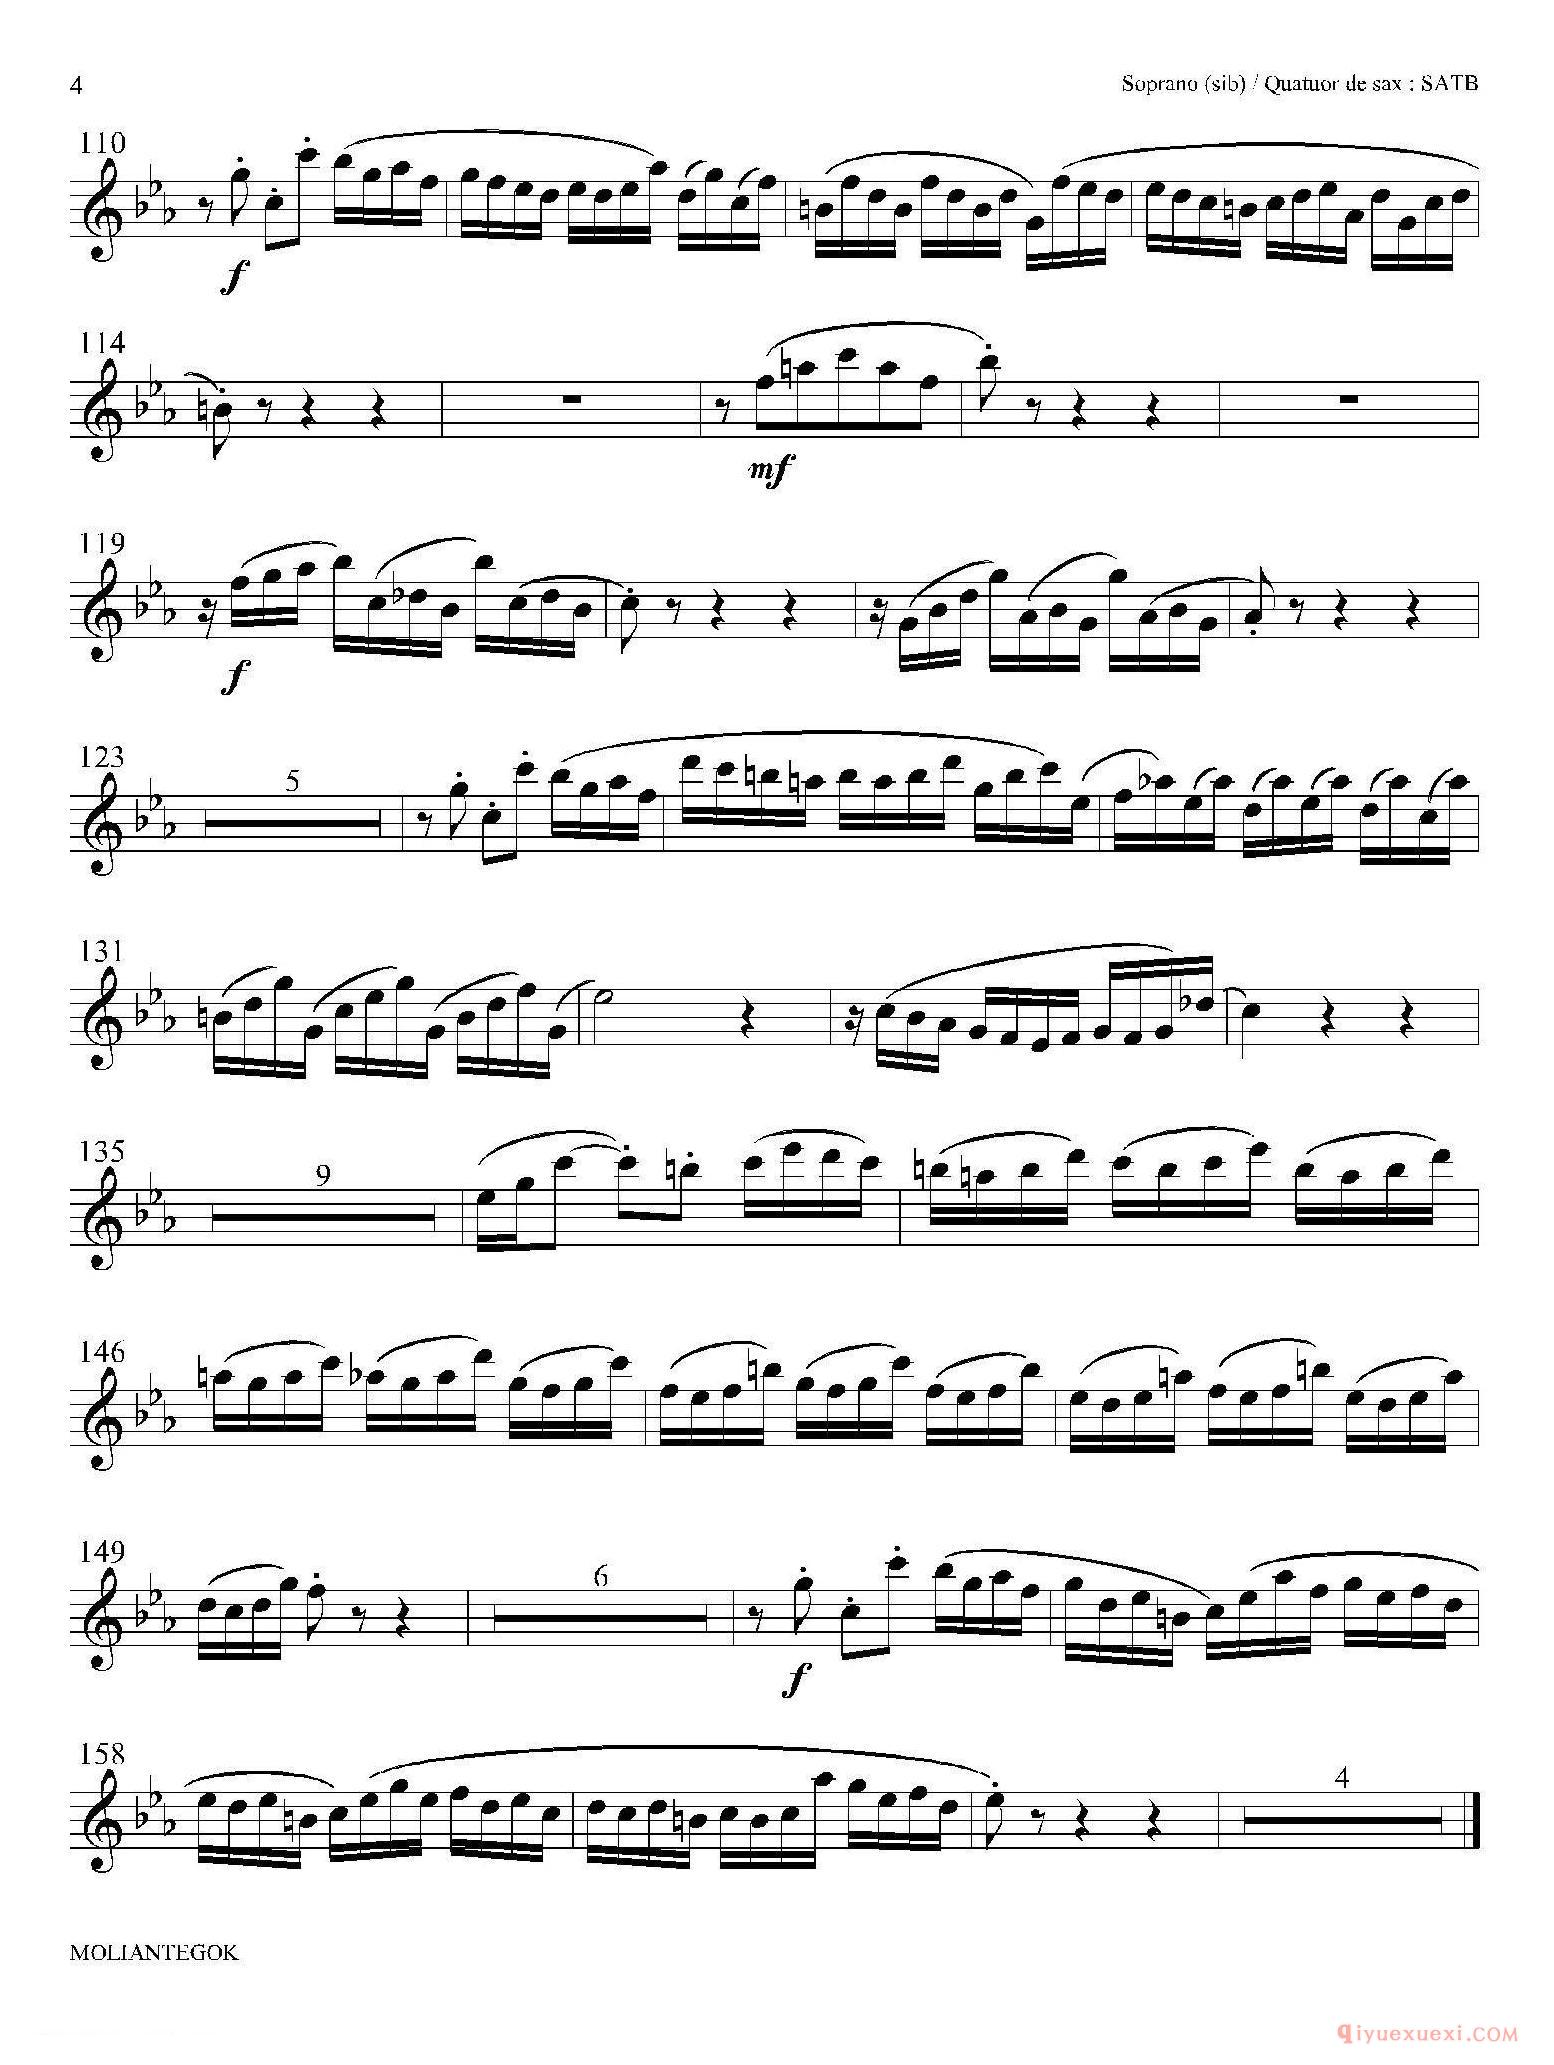 法国组曲之二·前奏曲[Suite anglaise No 2,BWV 807]高音萨克斯分谱